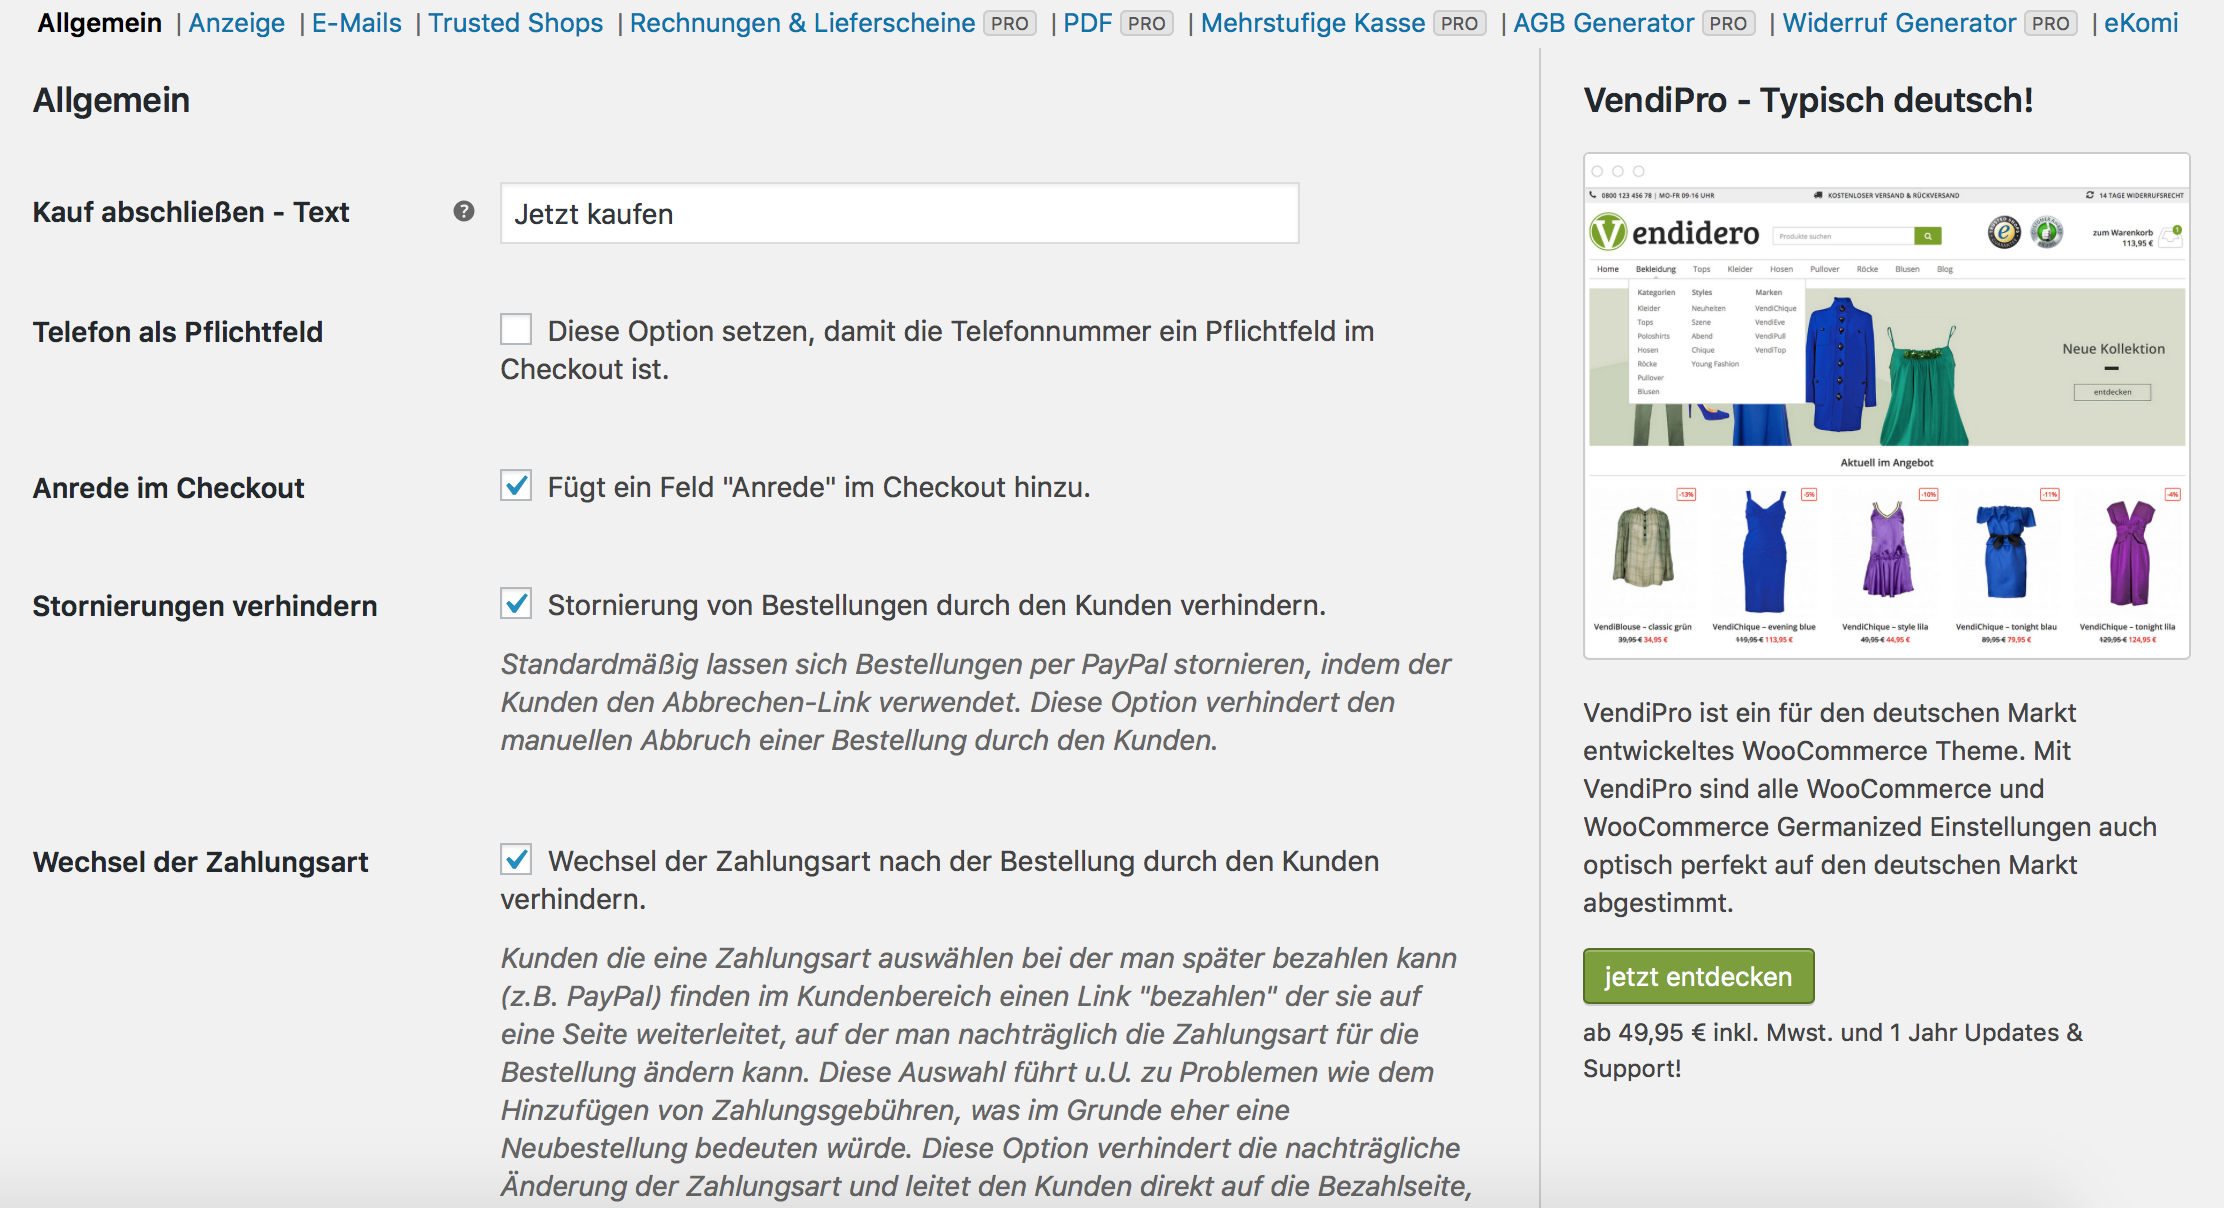 WooCommerce Germanized für rechtliche Anpassungen